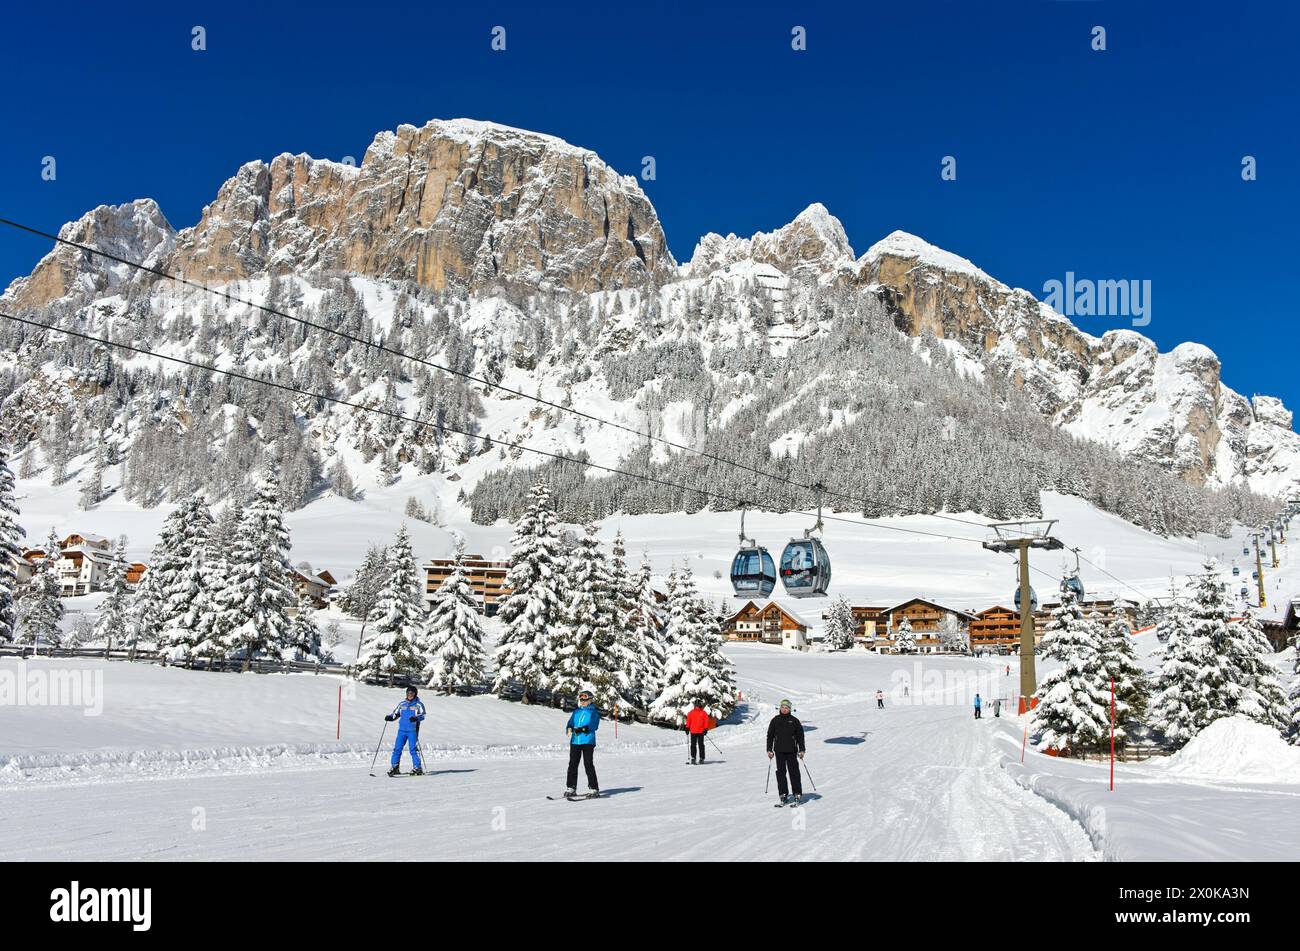 Sciatori in discesa alla stazione a valle della funivia di Colfosco, Colfosco, Corvara, regione degli sport invernali dell'alta Badia, Dolomiti, alto Adige, Italia Foto Stock